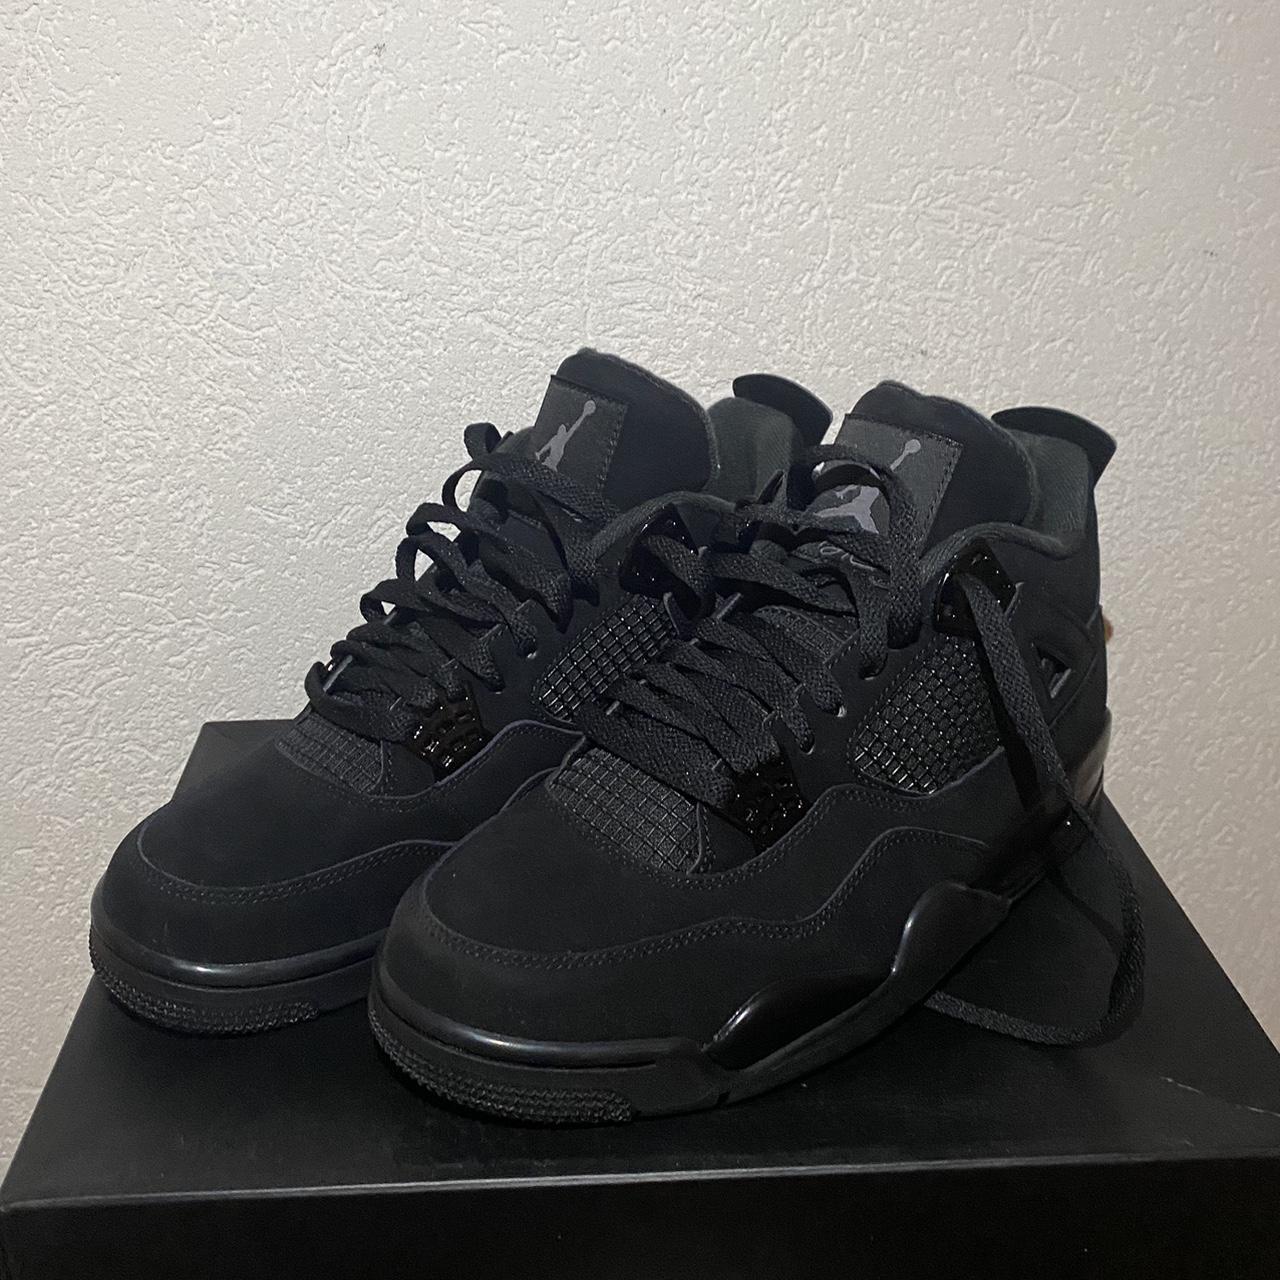 Jordan 4 Black Cat🖤 -brand new 10/10 -dm for... - Depop